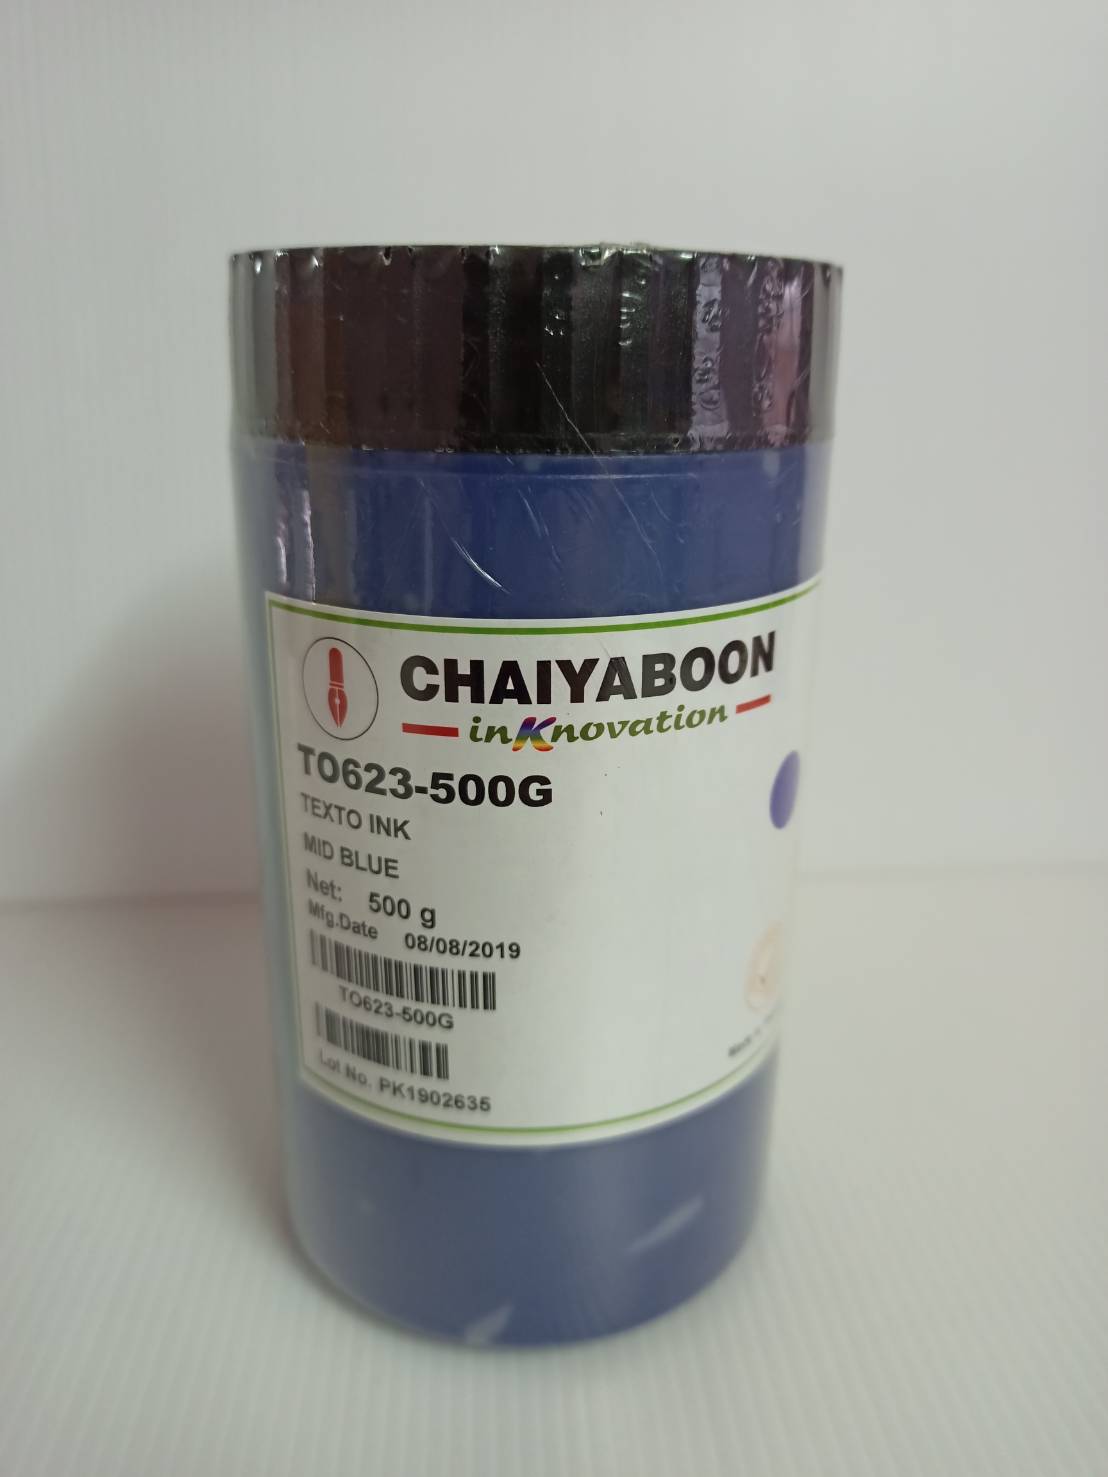 สีสกรีน TO623-500G -TEXTO INK  MID BLUE สีฟ้าน้ำเงิน